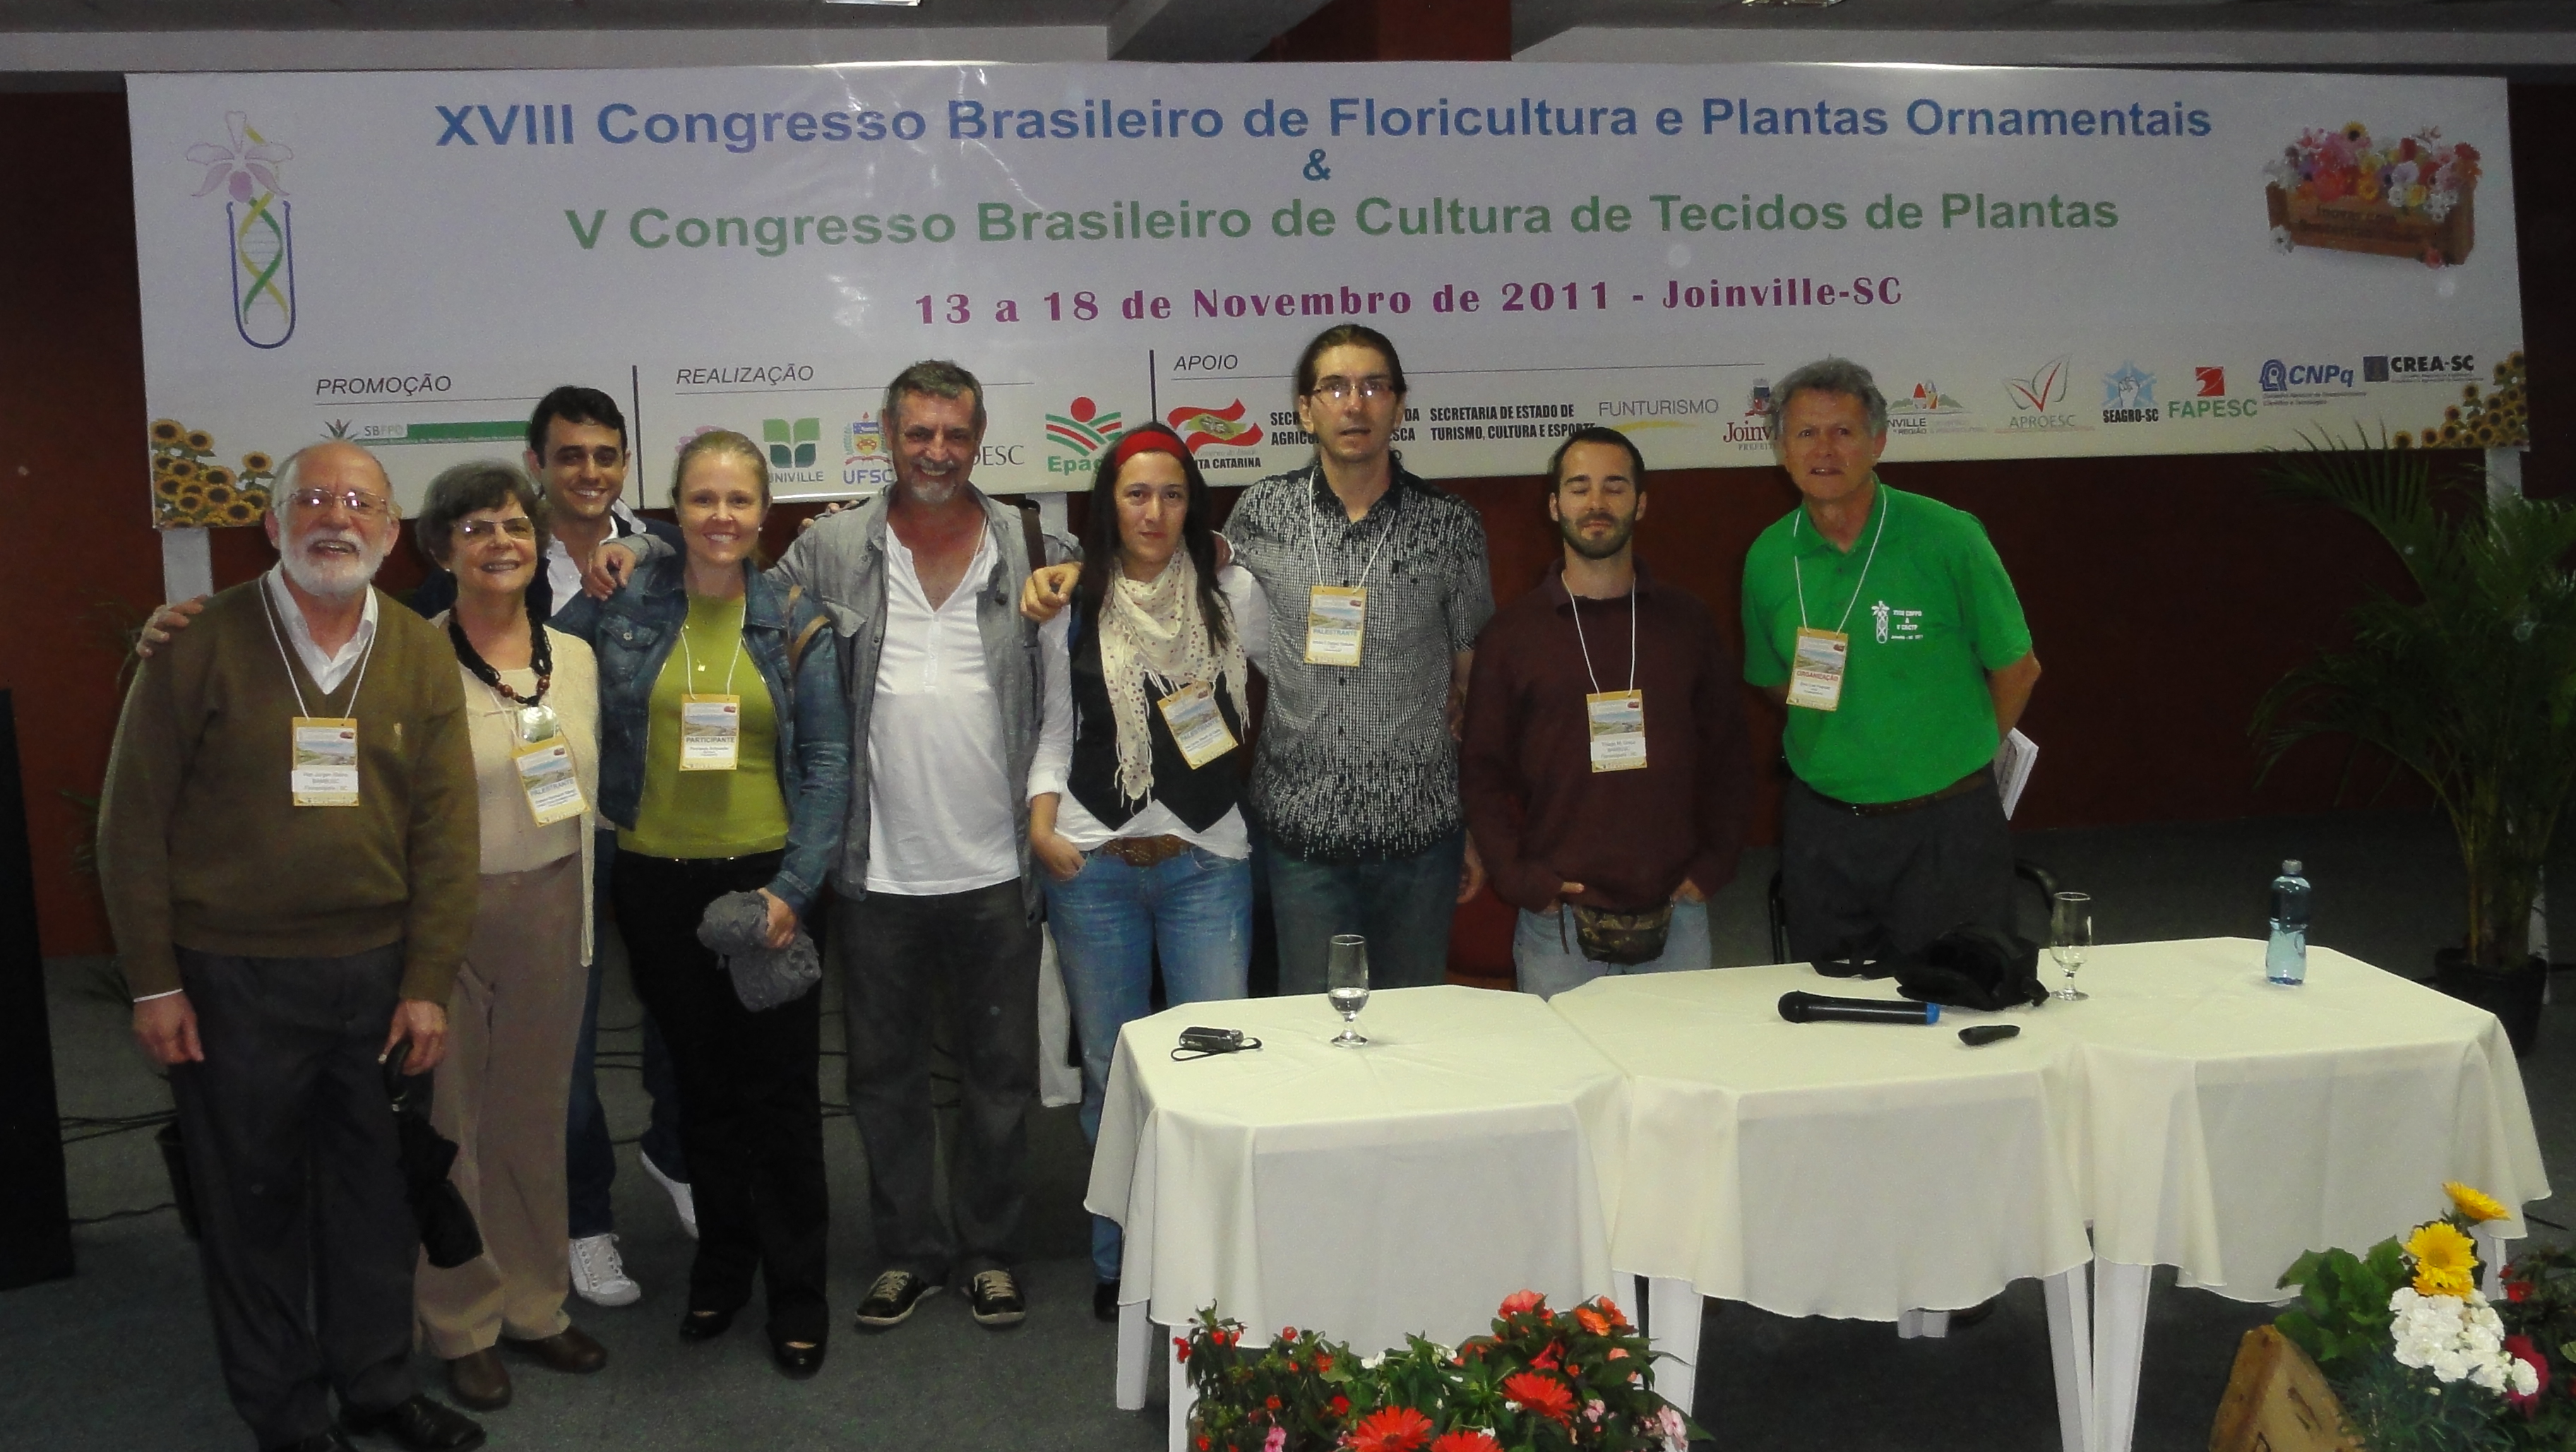 20111115 Joinville Congresso Brasileiro de Floricultura 003.jpg